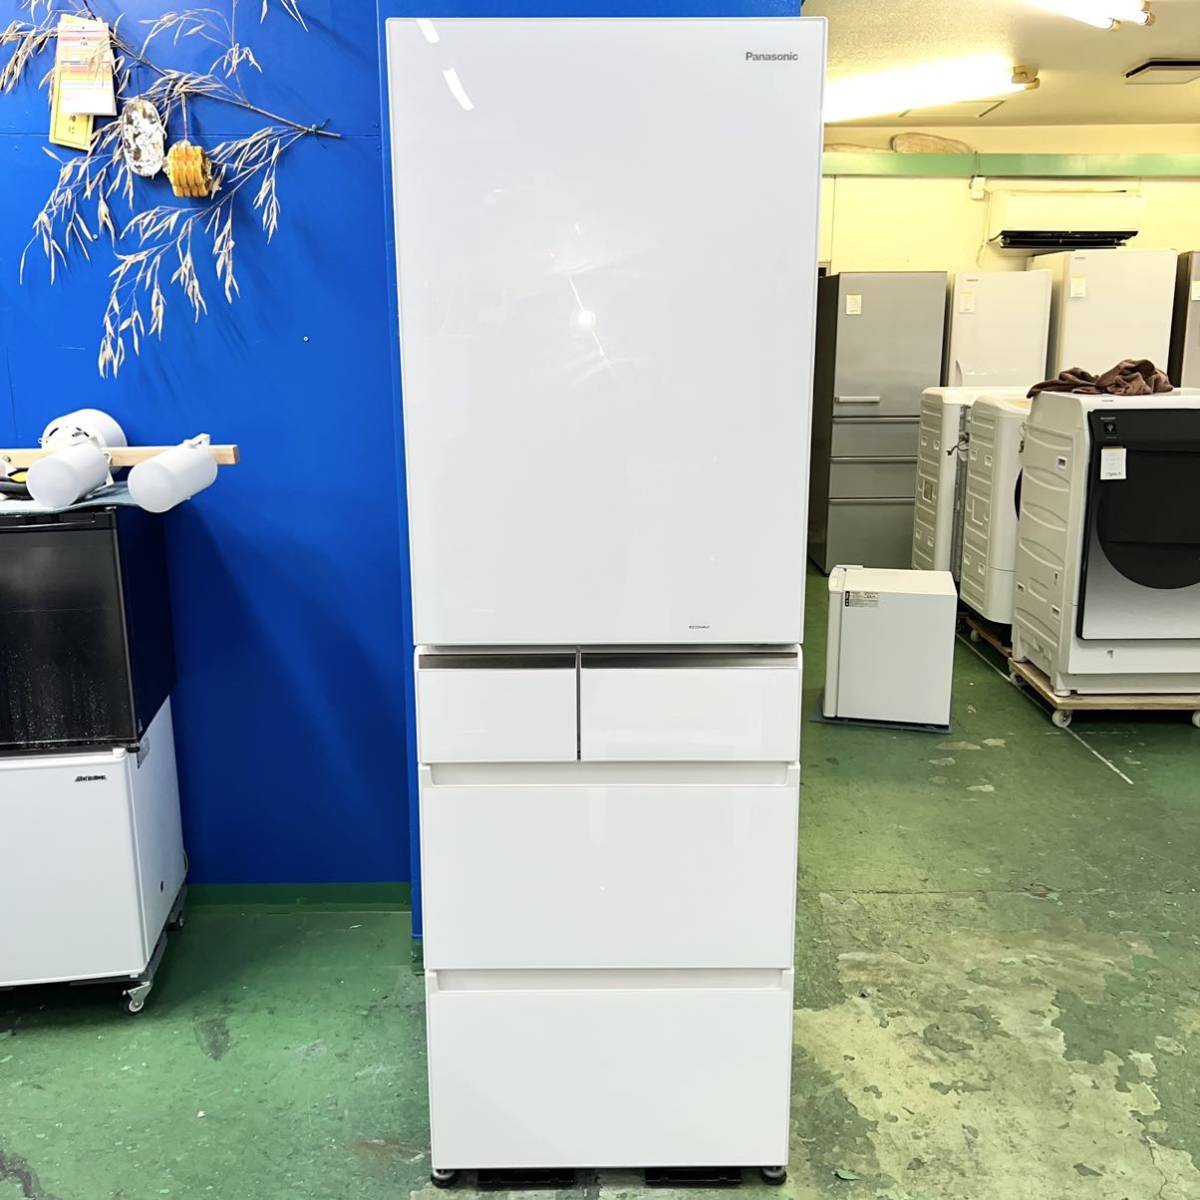 世界的に有名な ◇Panasonic◇冷凍冷蔵庫 2019年406L自動製氷 大阪市 